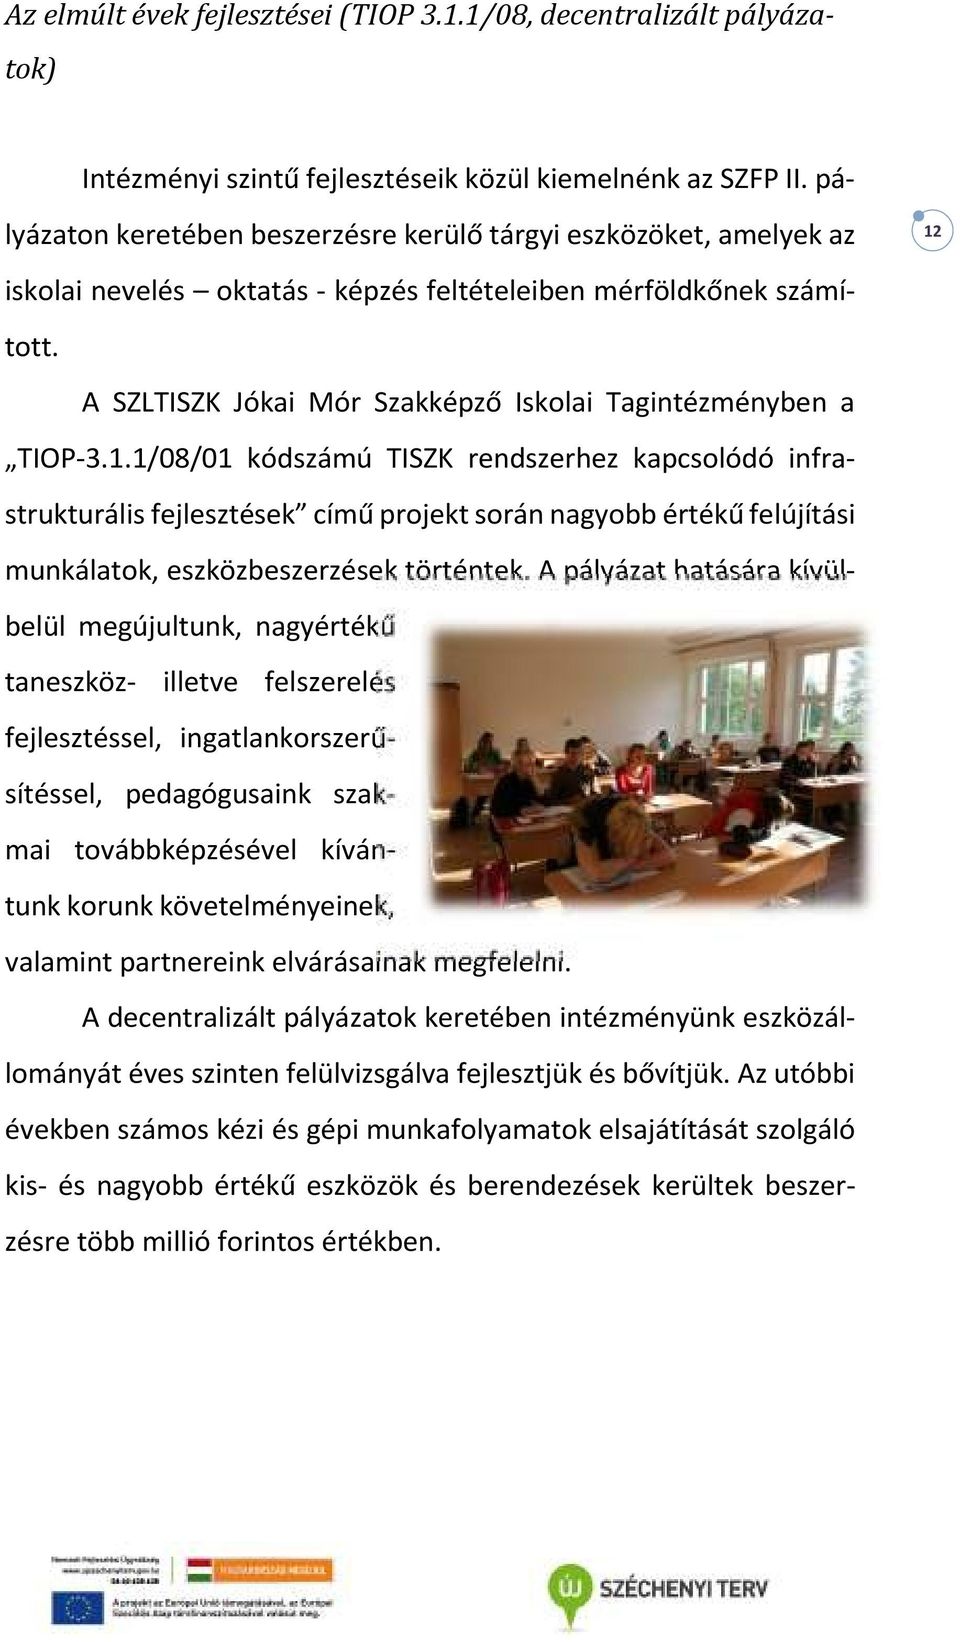 A SZLTISZK Jókai Mór Szakképző Iskolai Tagintézményben a TIOP-3.1.